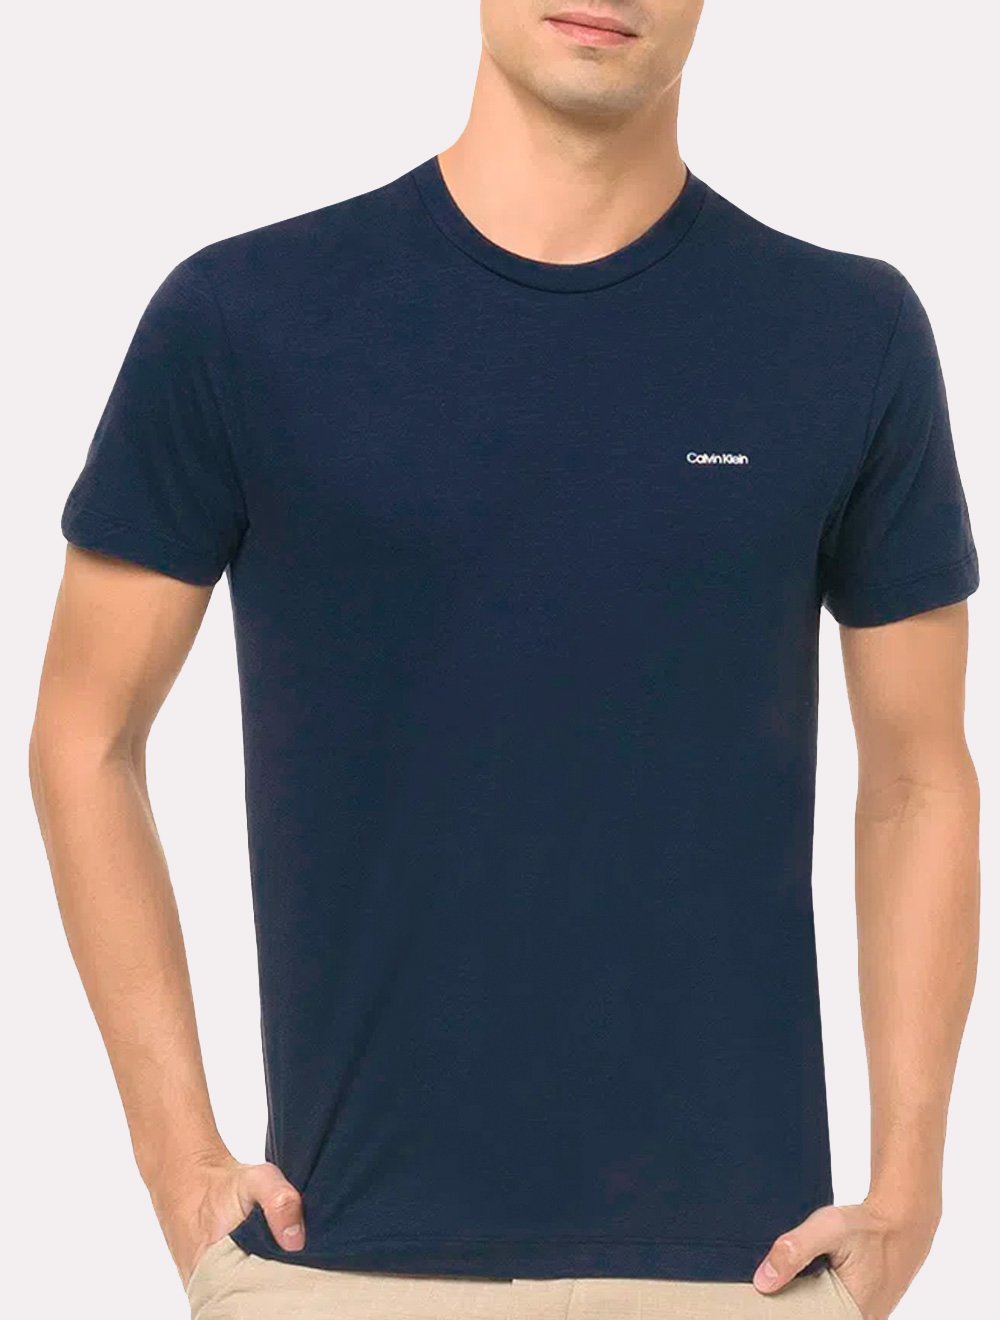 Camiseta Calvin Klein Masculina Flame New Logo Azul Marinho